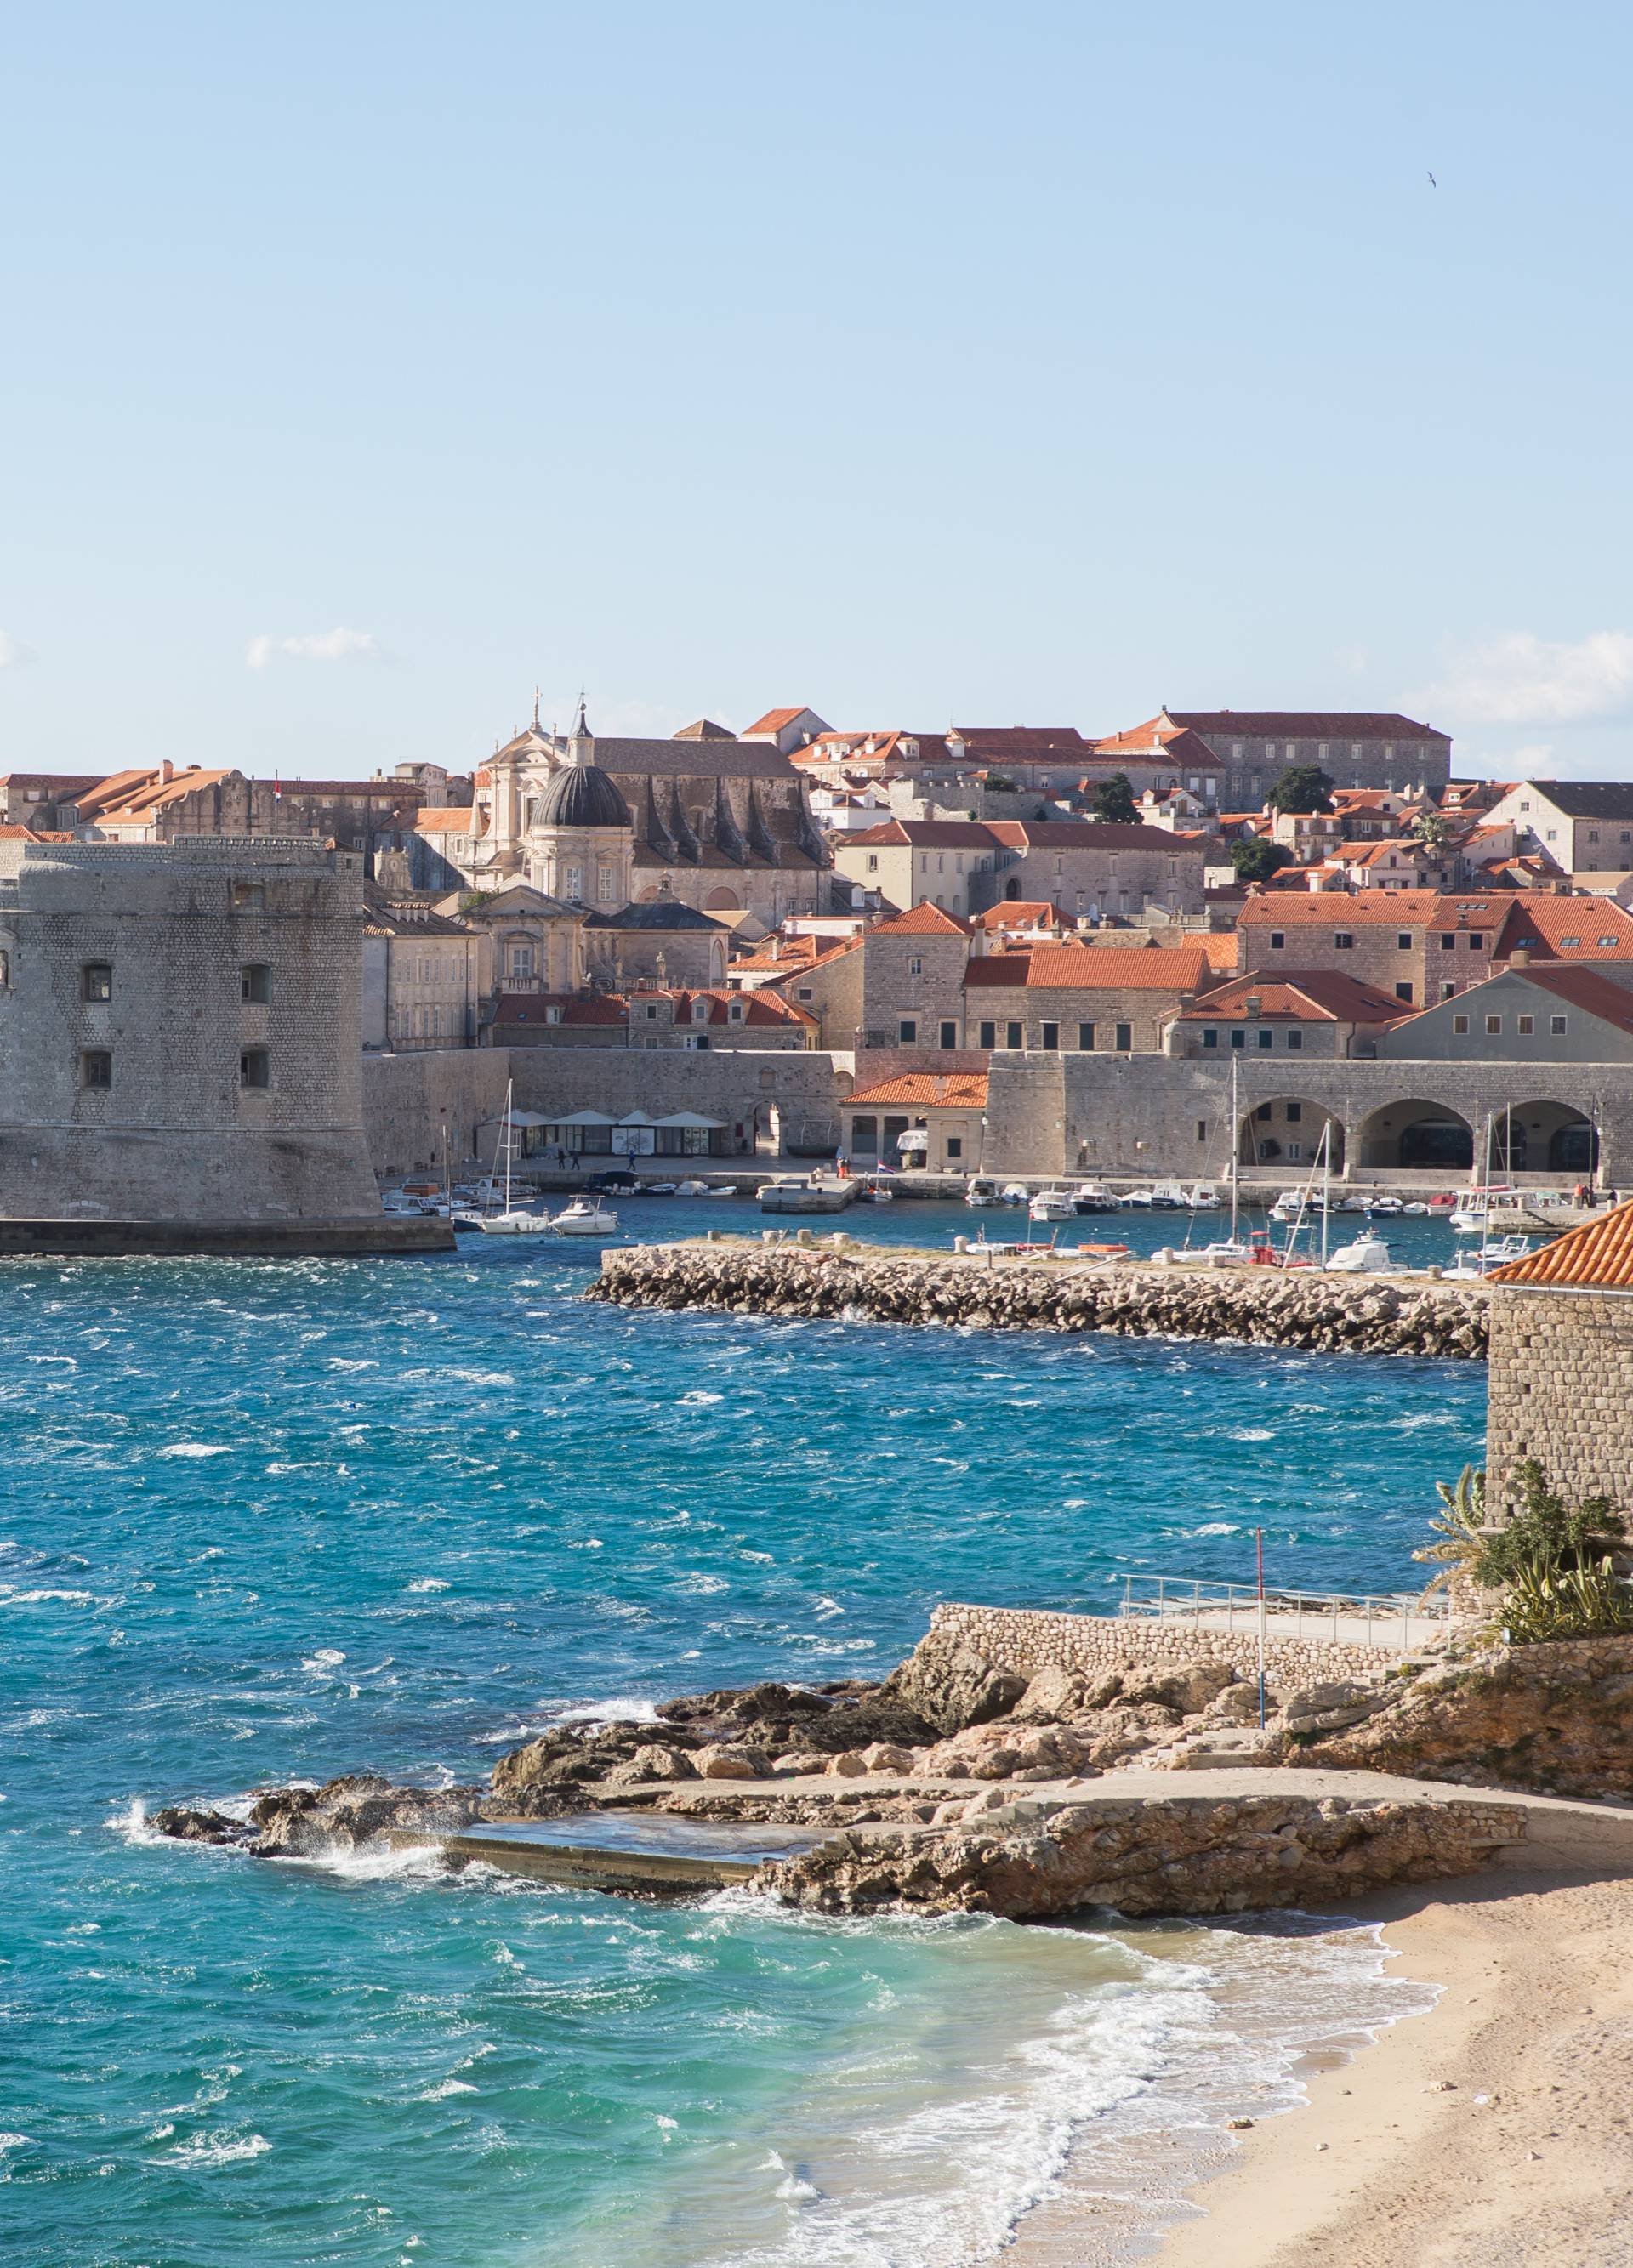 Potres jačine 3,5 po Richteru pogodio je okolicu Dubrovnika